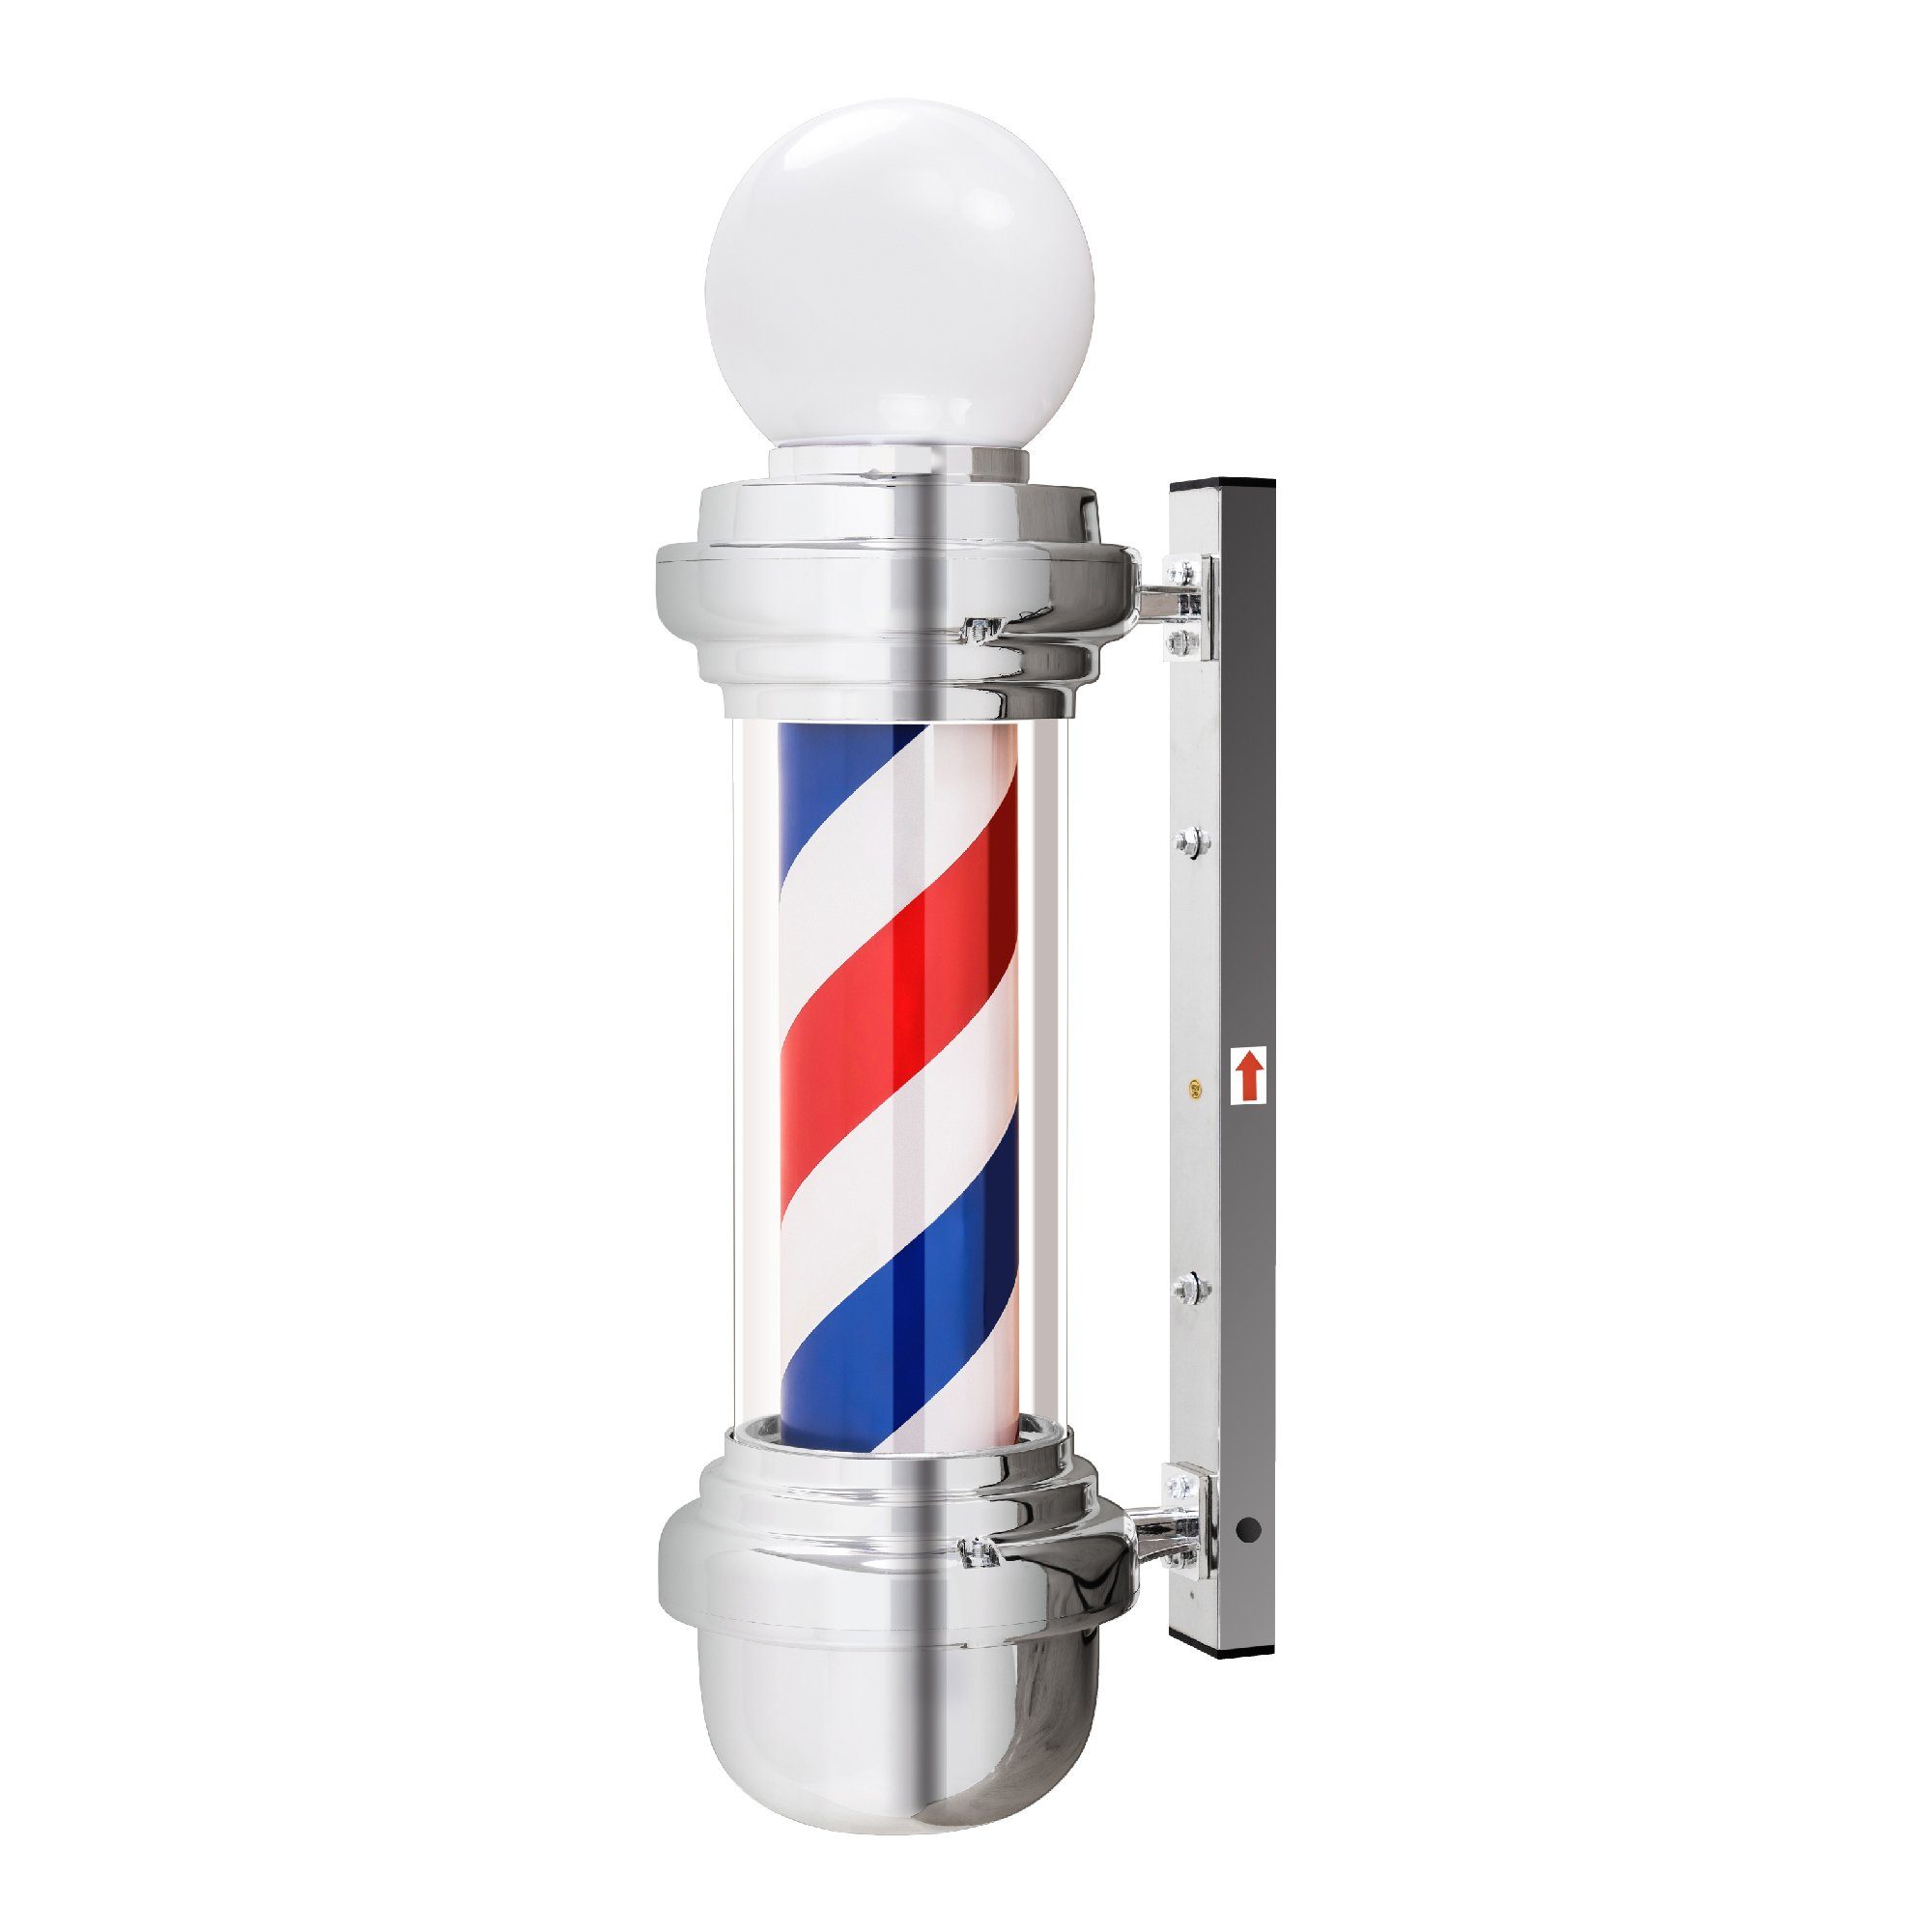 Barberpub Außen-Stehlampe Barberpub Barber-Pole Barbierstab L018B, mit LED-Kugelleuchte Saloneinrichtung, drehbar Barbershop-Säule, Acryl-KunststoffRot-Blau-Weiß, 19 x 19 x 65 cm